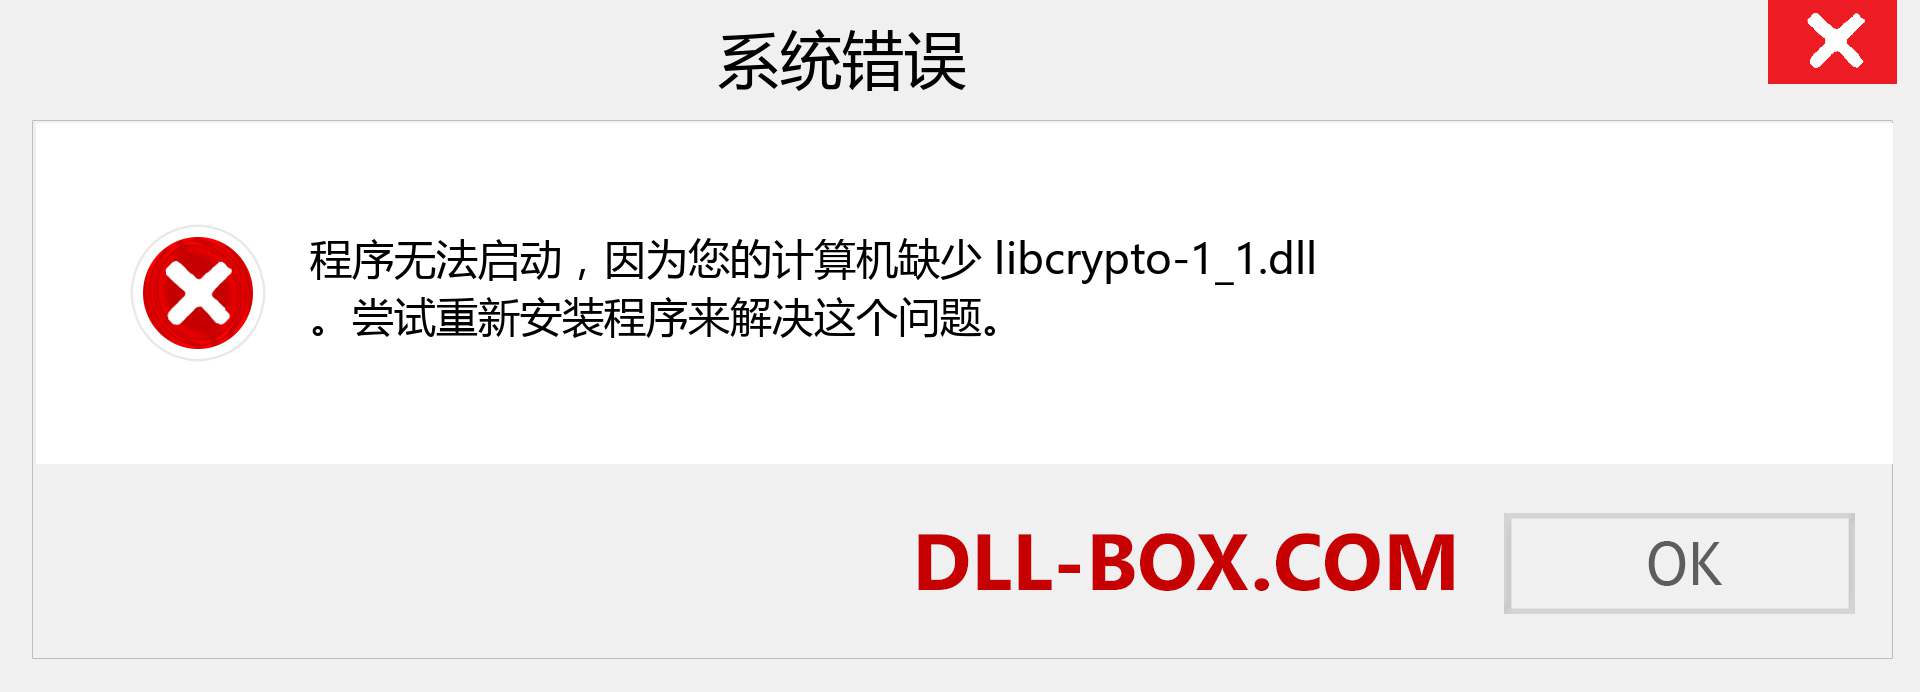 libcrypto-1_1.dll 文件丢失？。 适用于 Windows 7、8、10 的下载 - 修复 Windows、照片、图像上的 libcrypto-1_1 dll 丢失错误